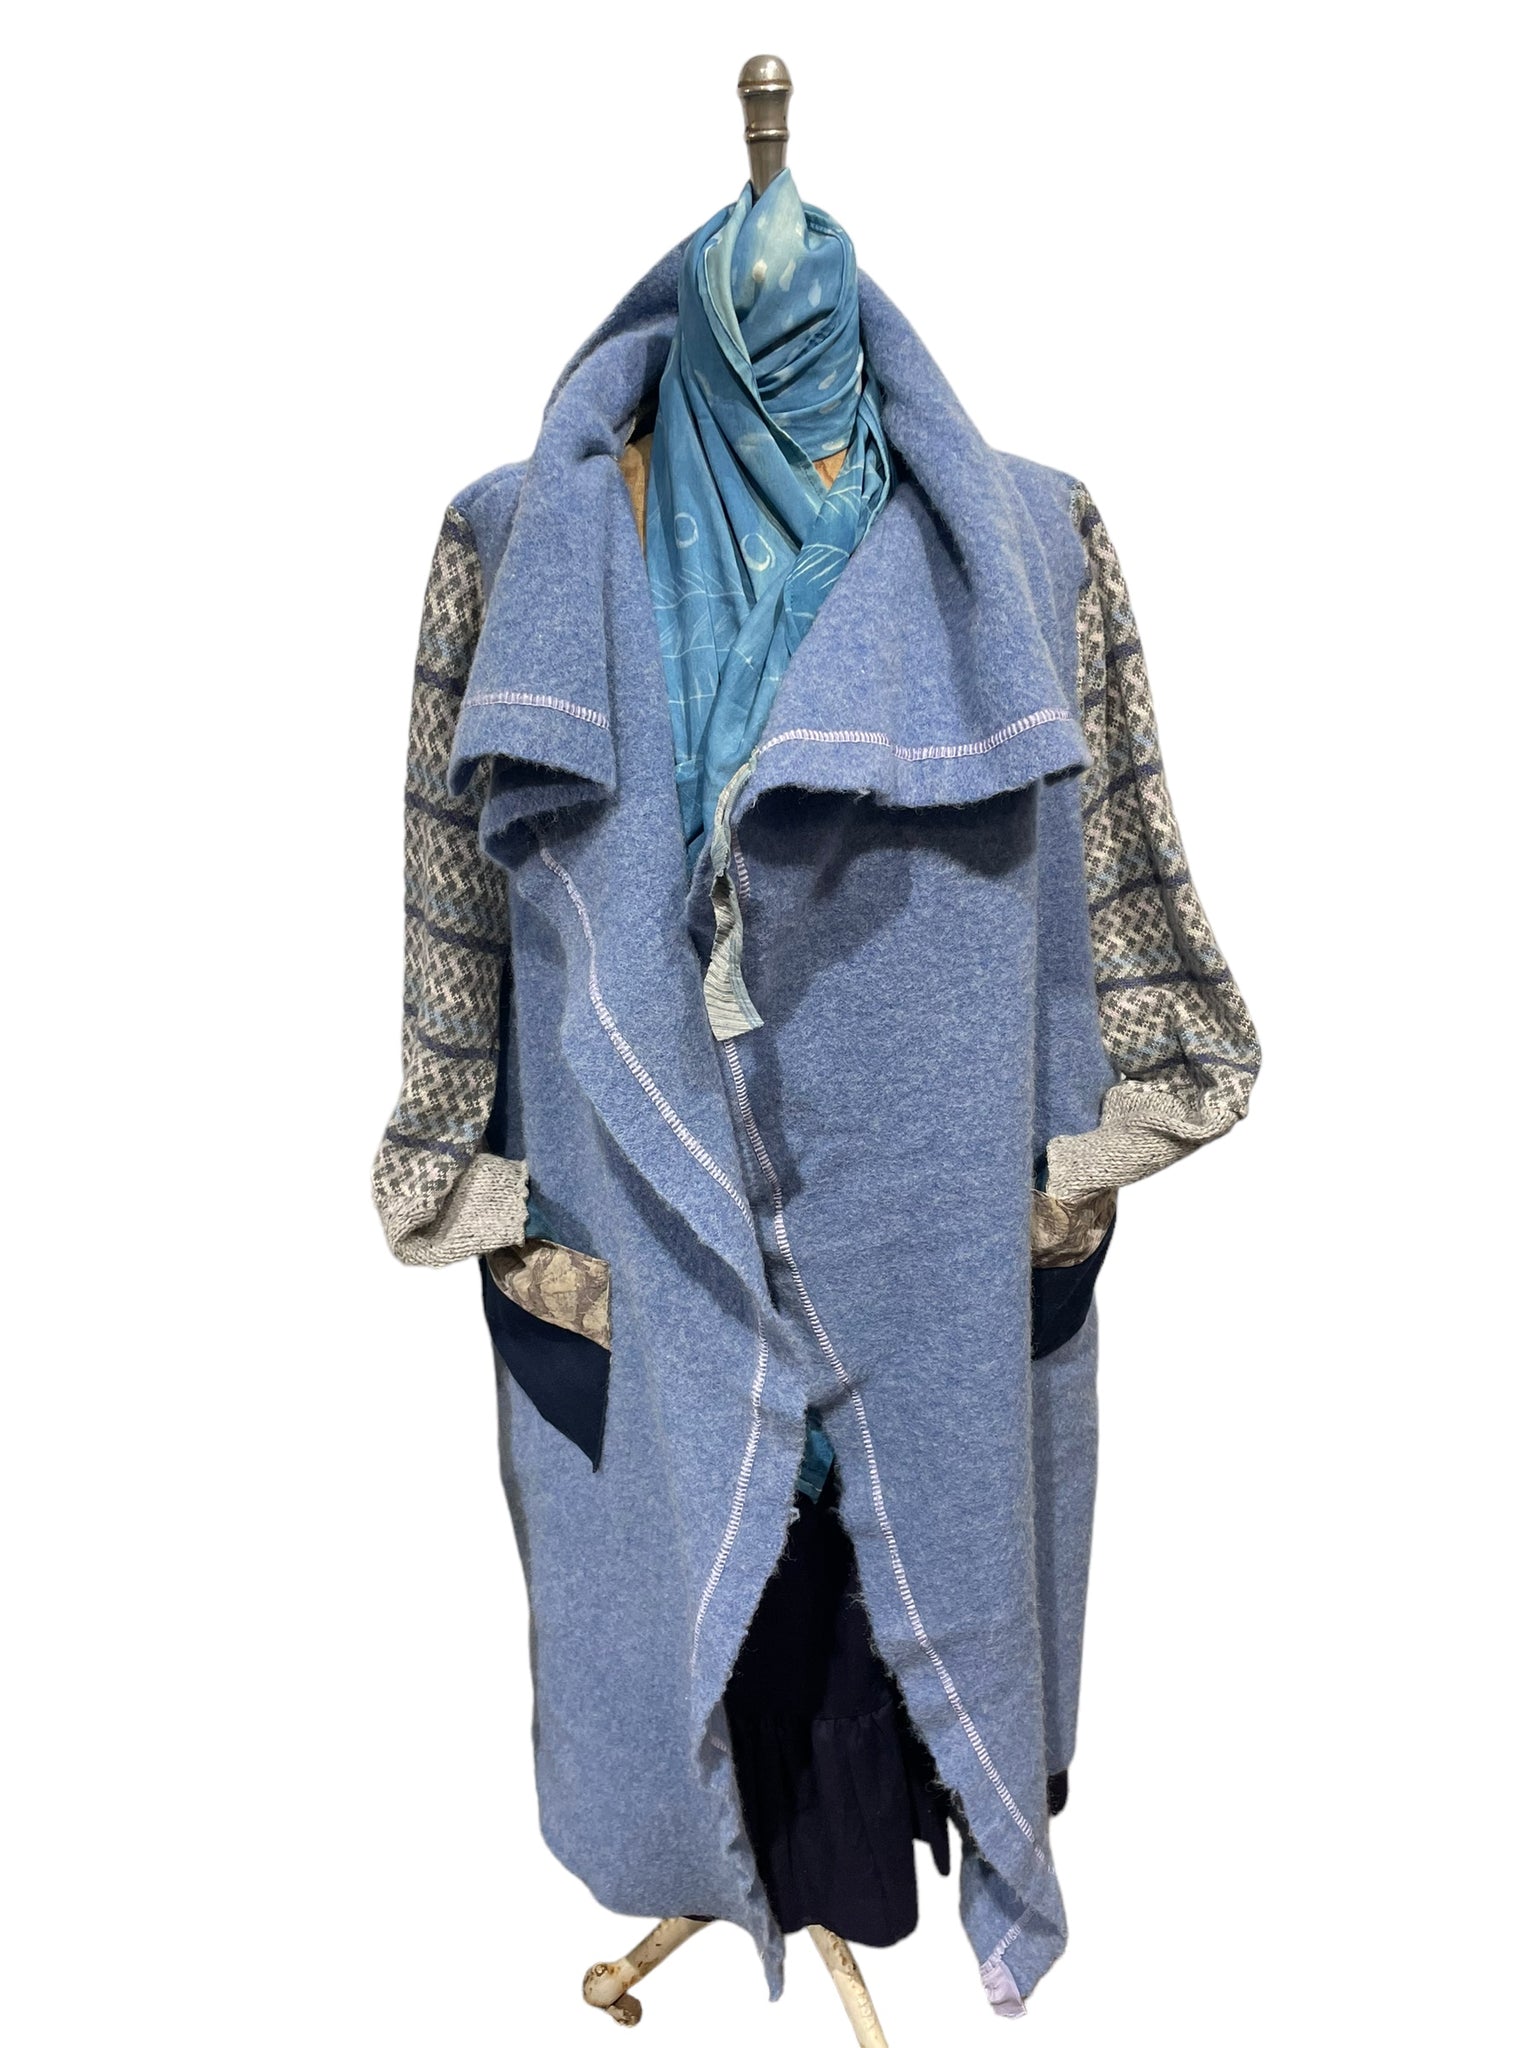 Blue Wool Blanket Wrap Coat